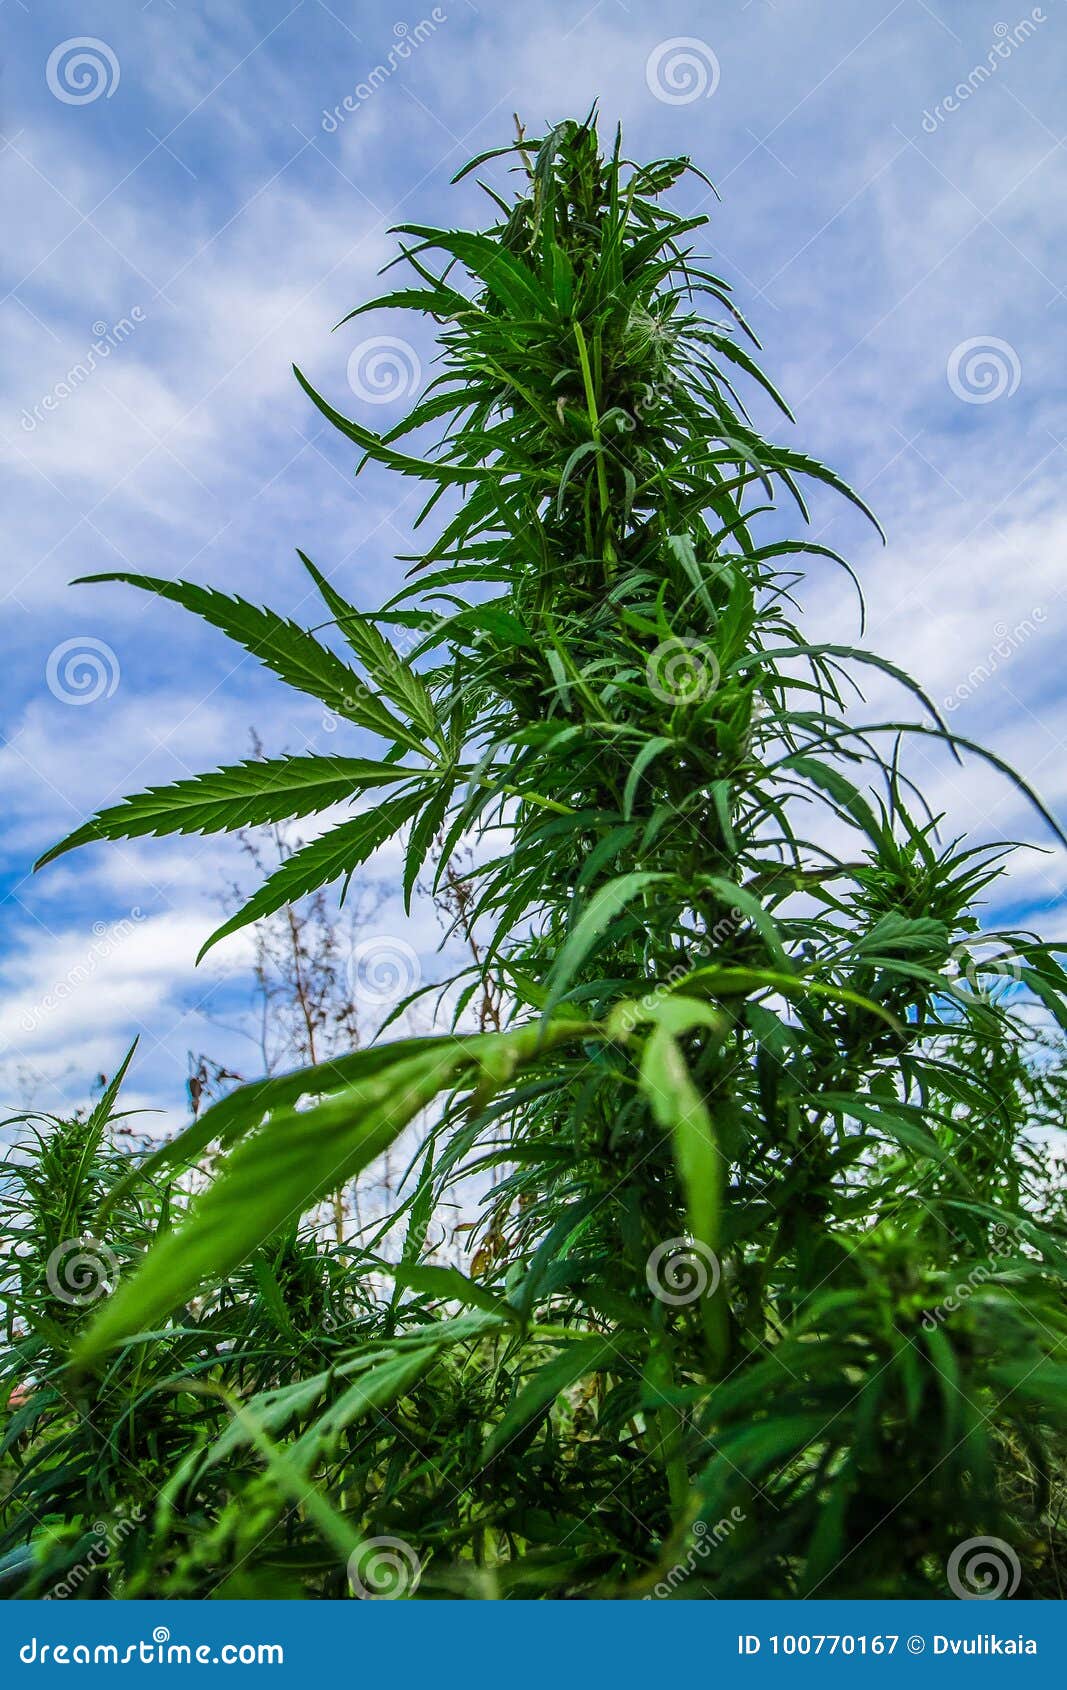 Скачать фото куст марихуаны в калифорнии марихуана закон